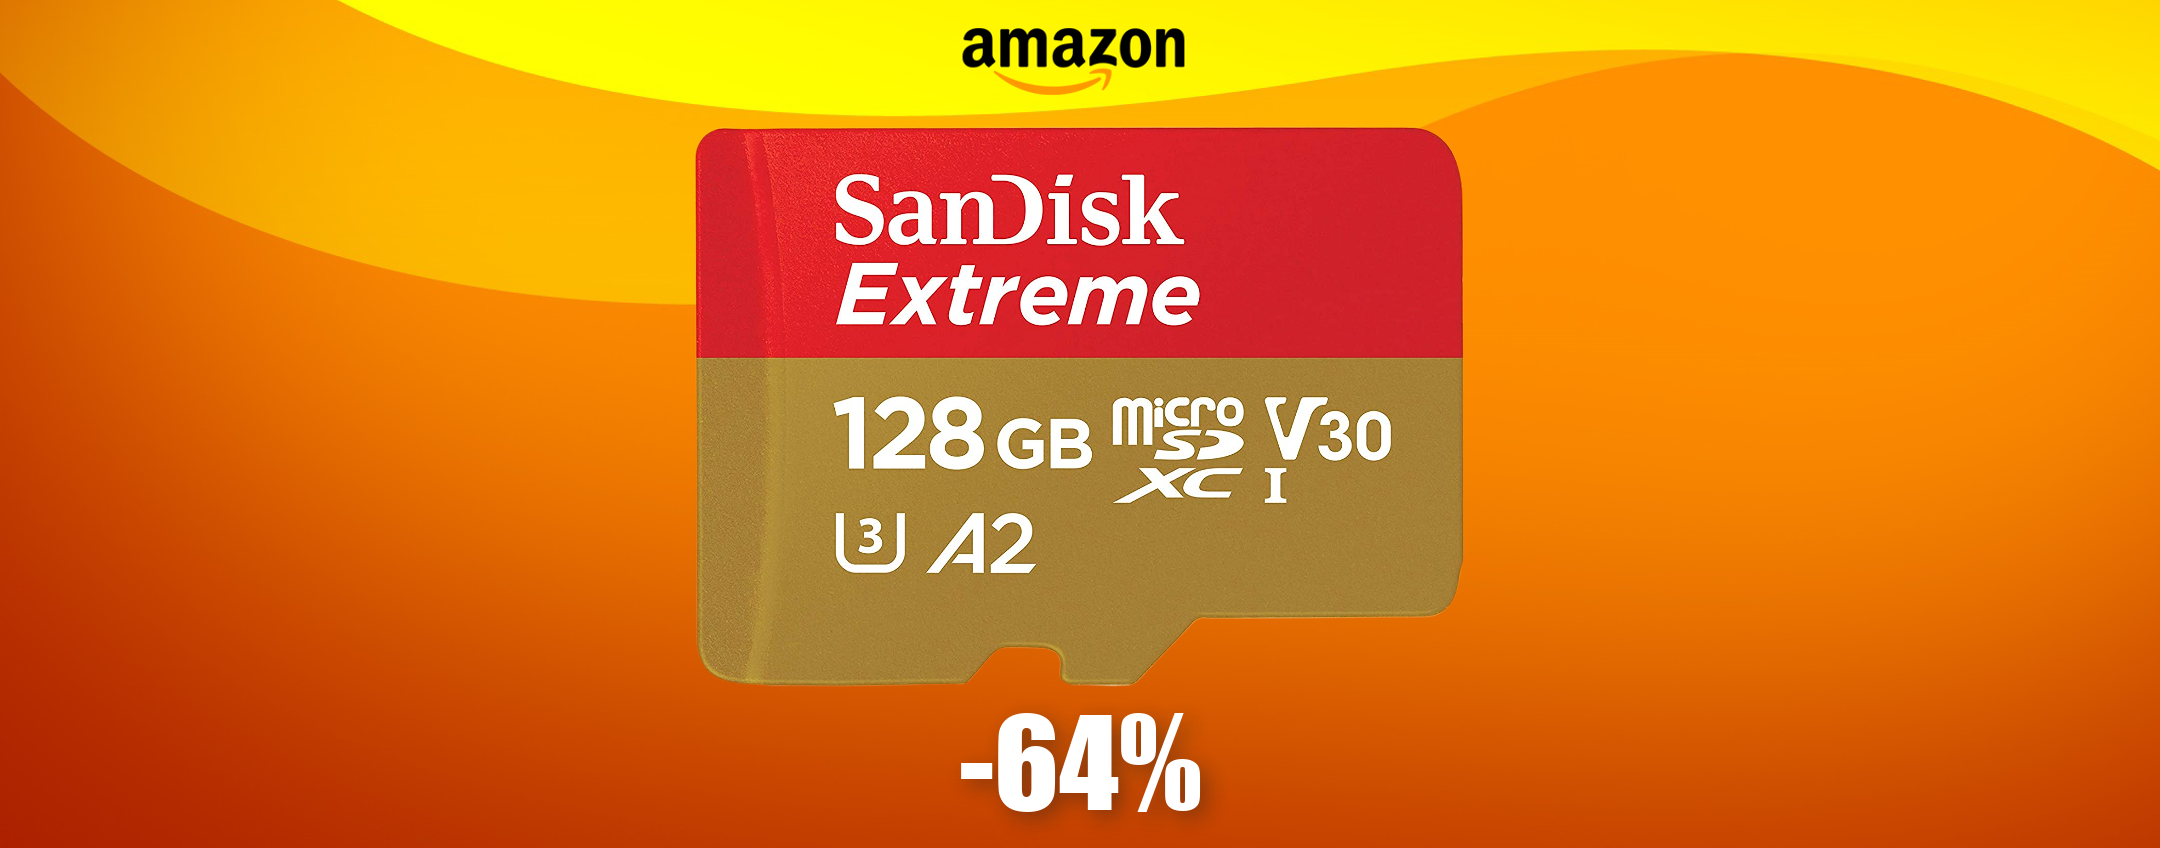 MicroSD SanDisk 128GB: una VERA OCCASIONE ad appena 23€ (-64%)